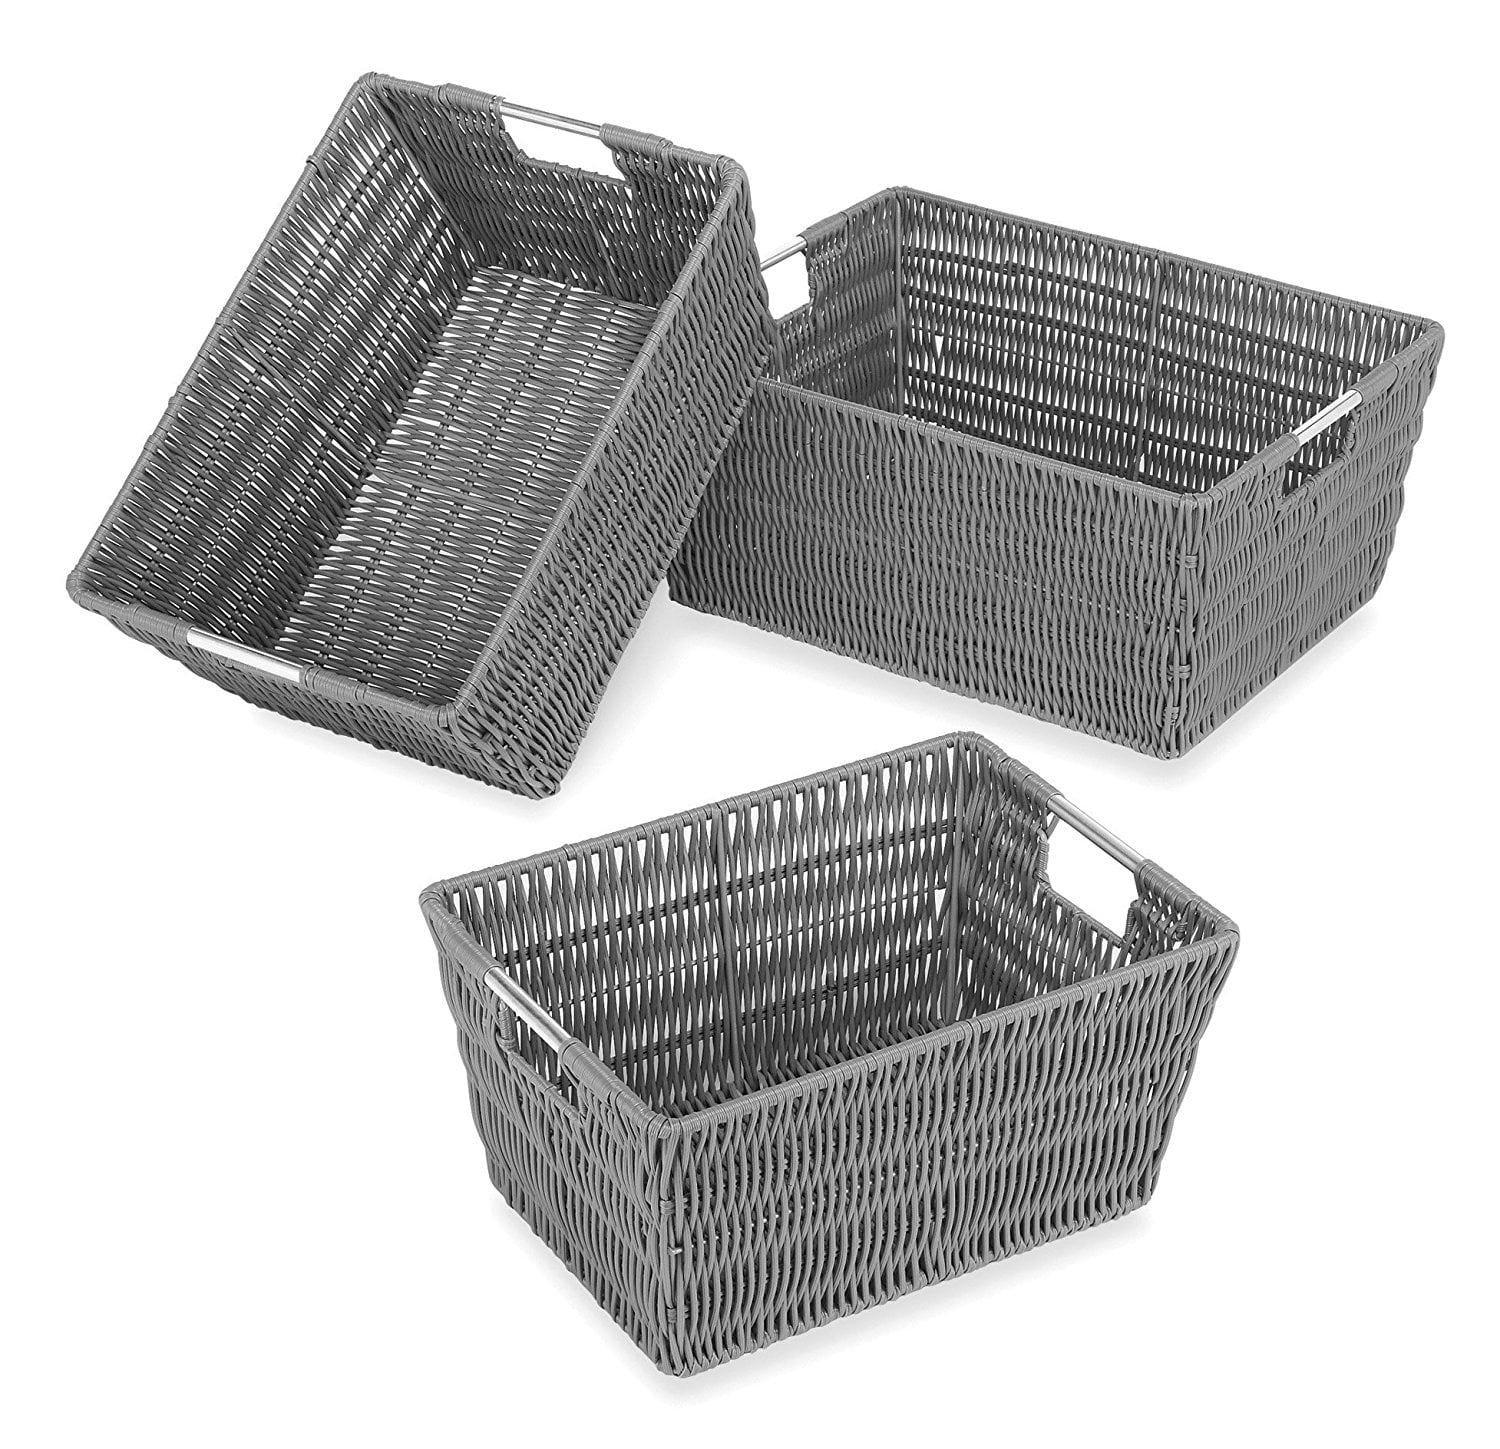 grey wicker storage baskets